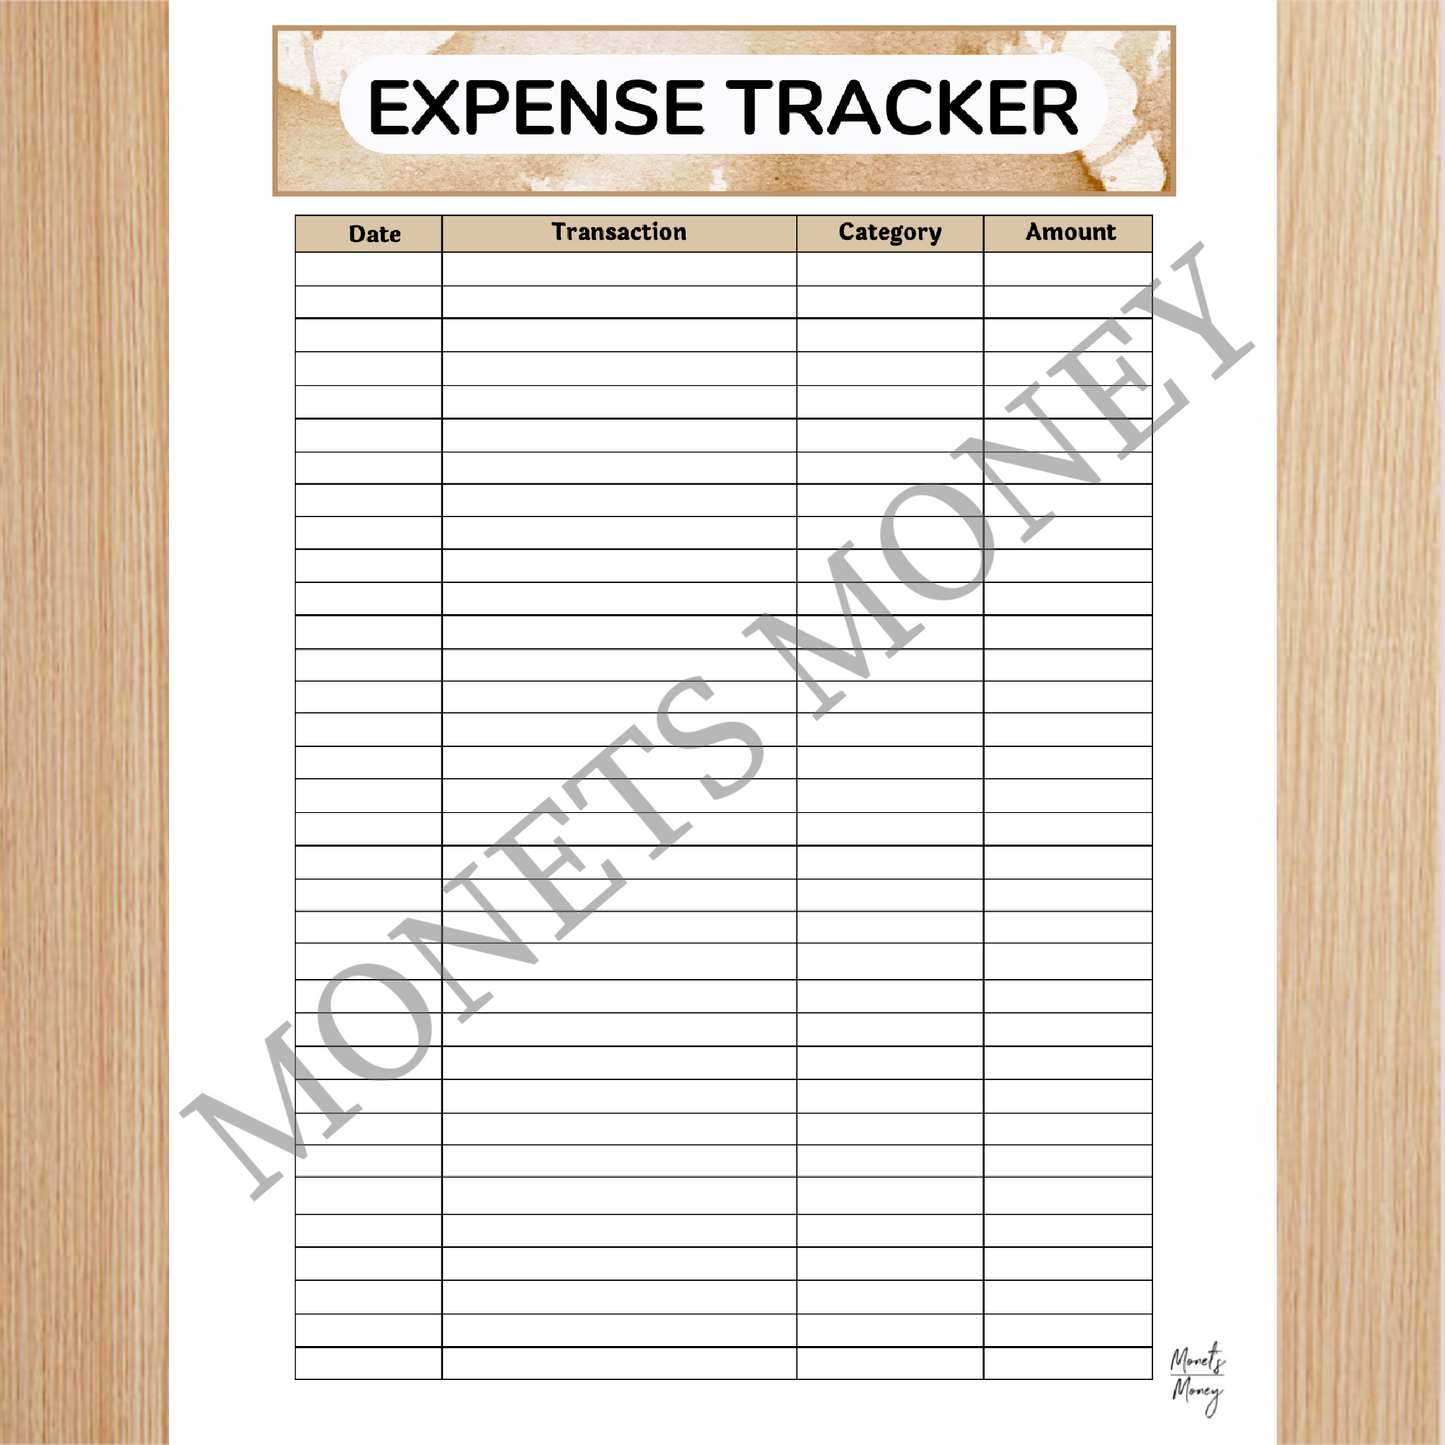 2024 April Budget Planner Kit | Budget Planner Printable